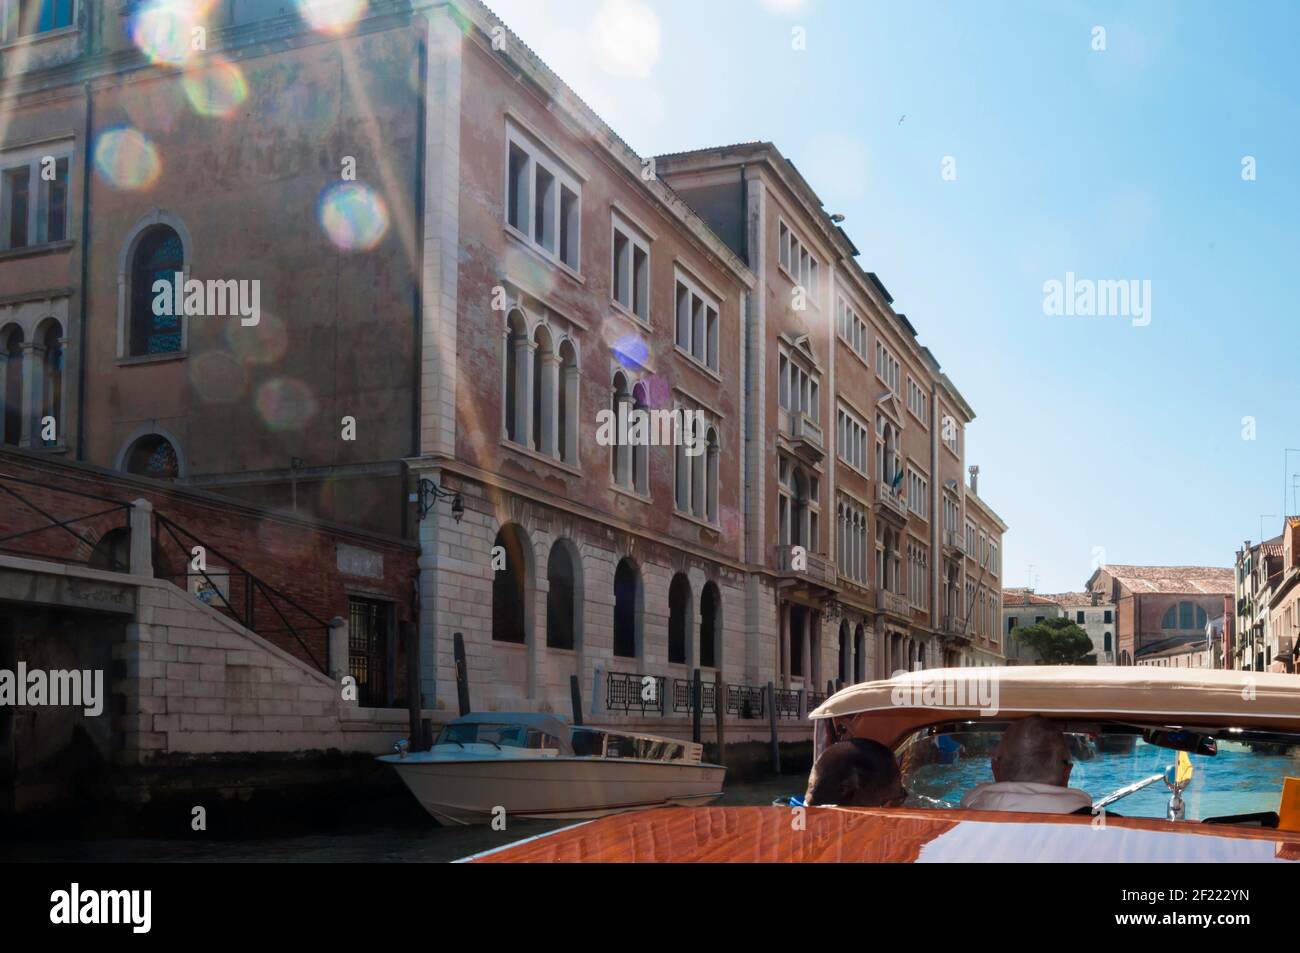 Wassertaxi Fahrt auf einem Kanal in Venedig. Alte Palazzi säumen den Weg Stockfoto